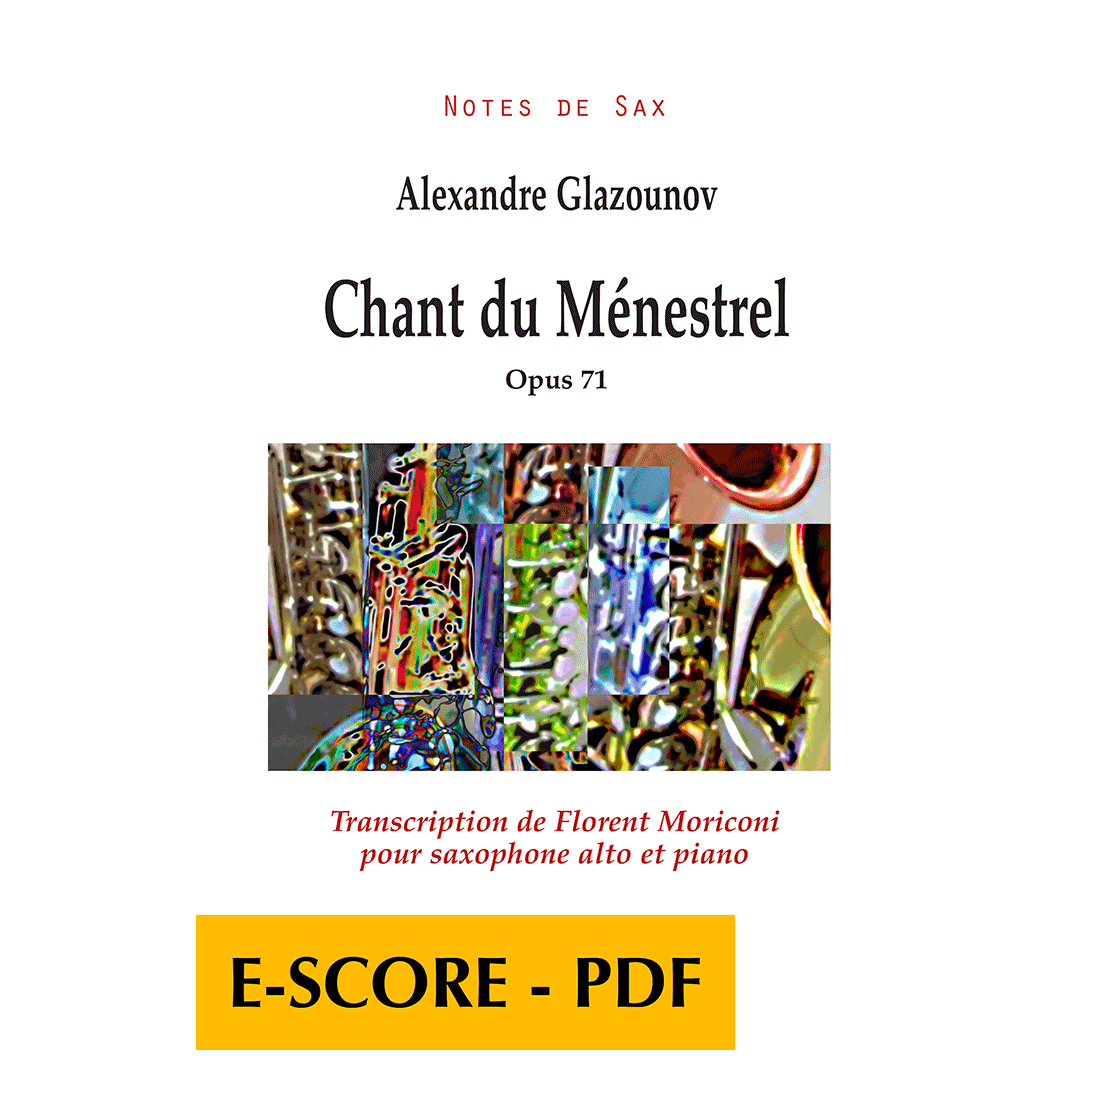 Chant du Ménestrel pour saxophone alto et piano - E-score PDF